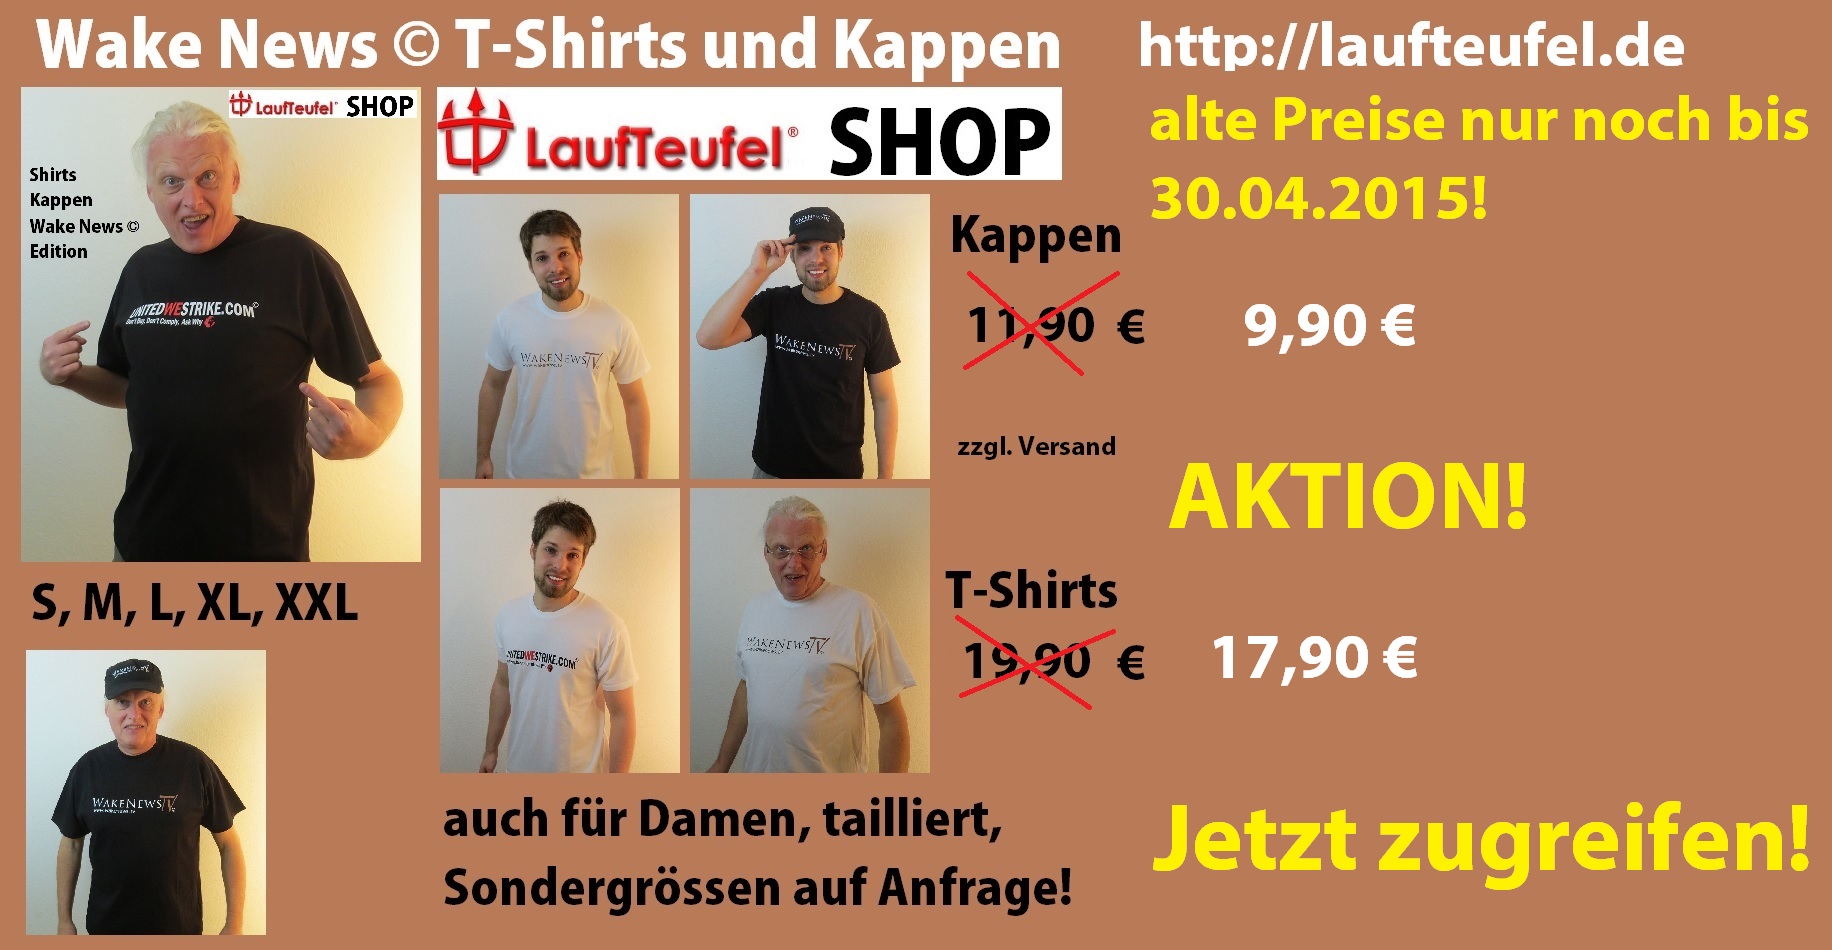 WN Shirts + Kappen neue Preise Aktion 30.04.2015